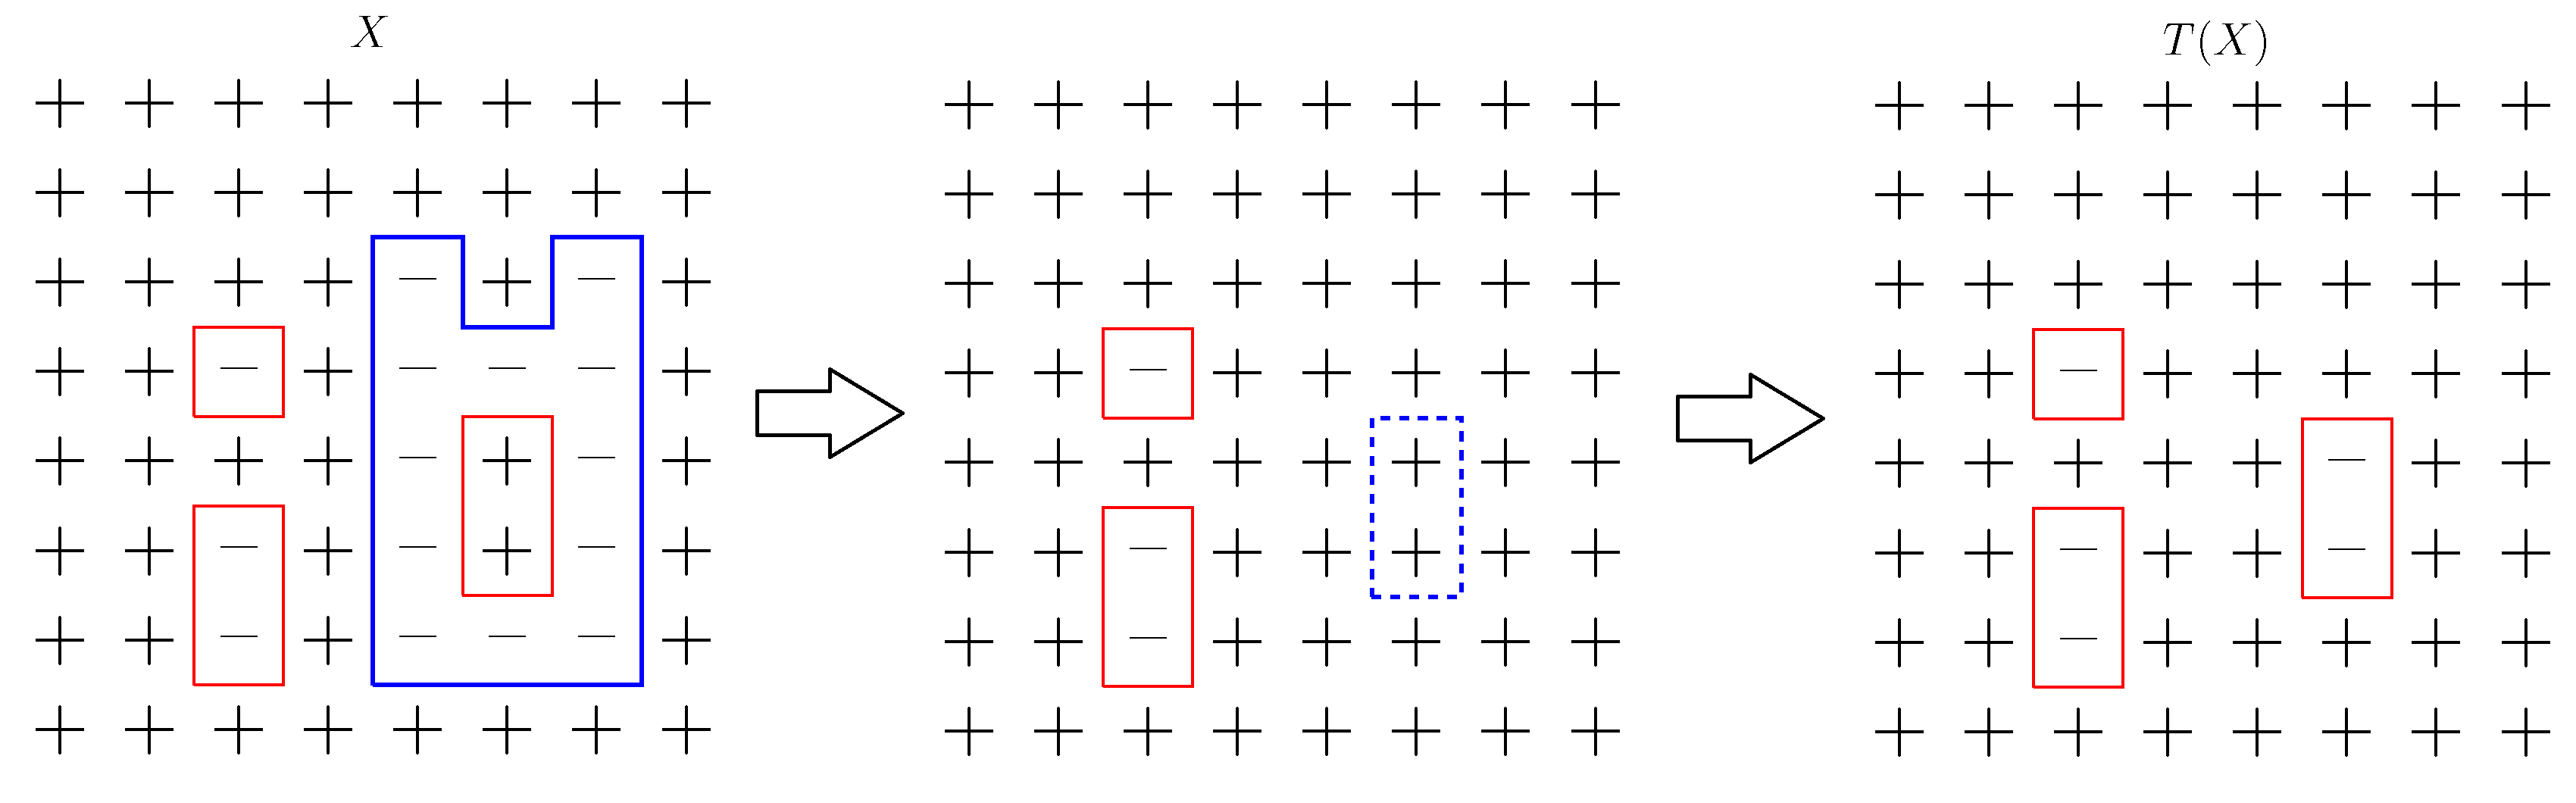 Ilustracja działania operatora wymazywania konturu. Na niebiesko zaznaczony jest kontur $\gamma$.